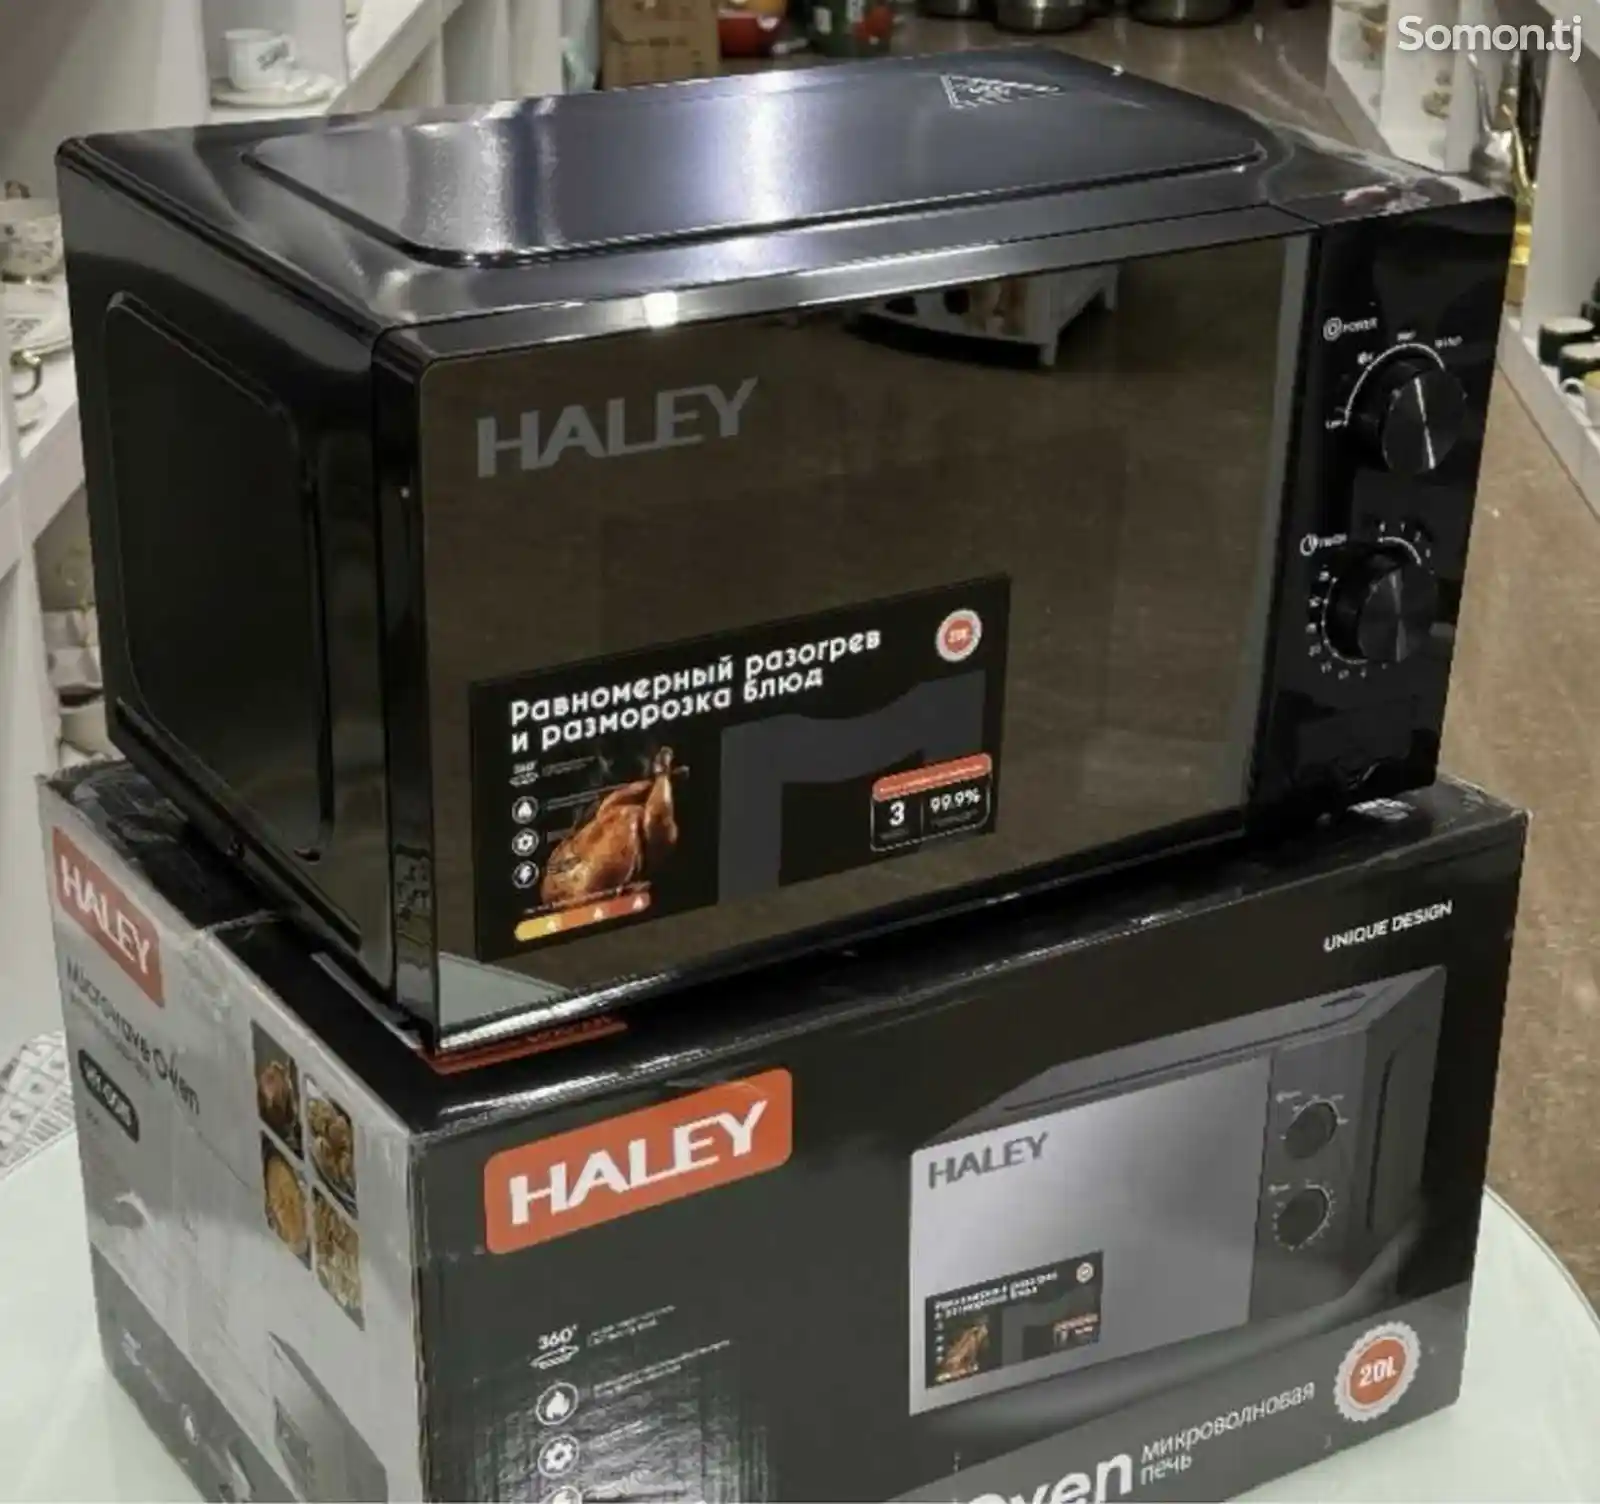 Микроволновая печь Haley-1